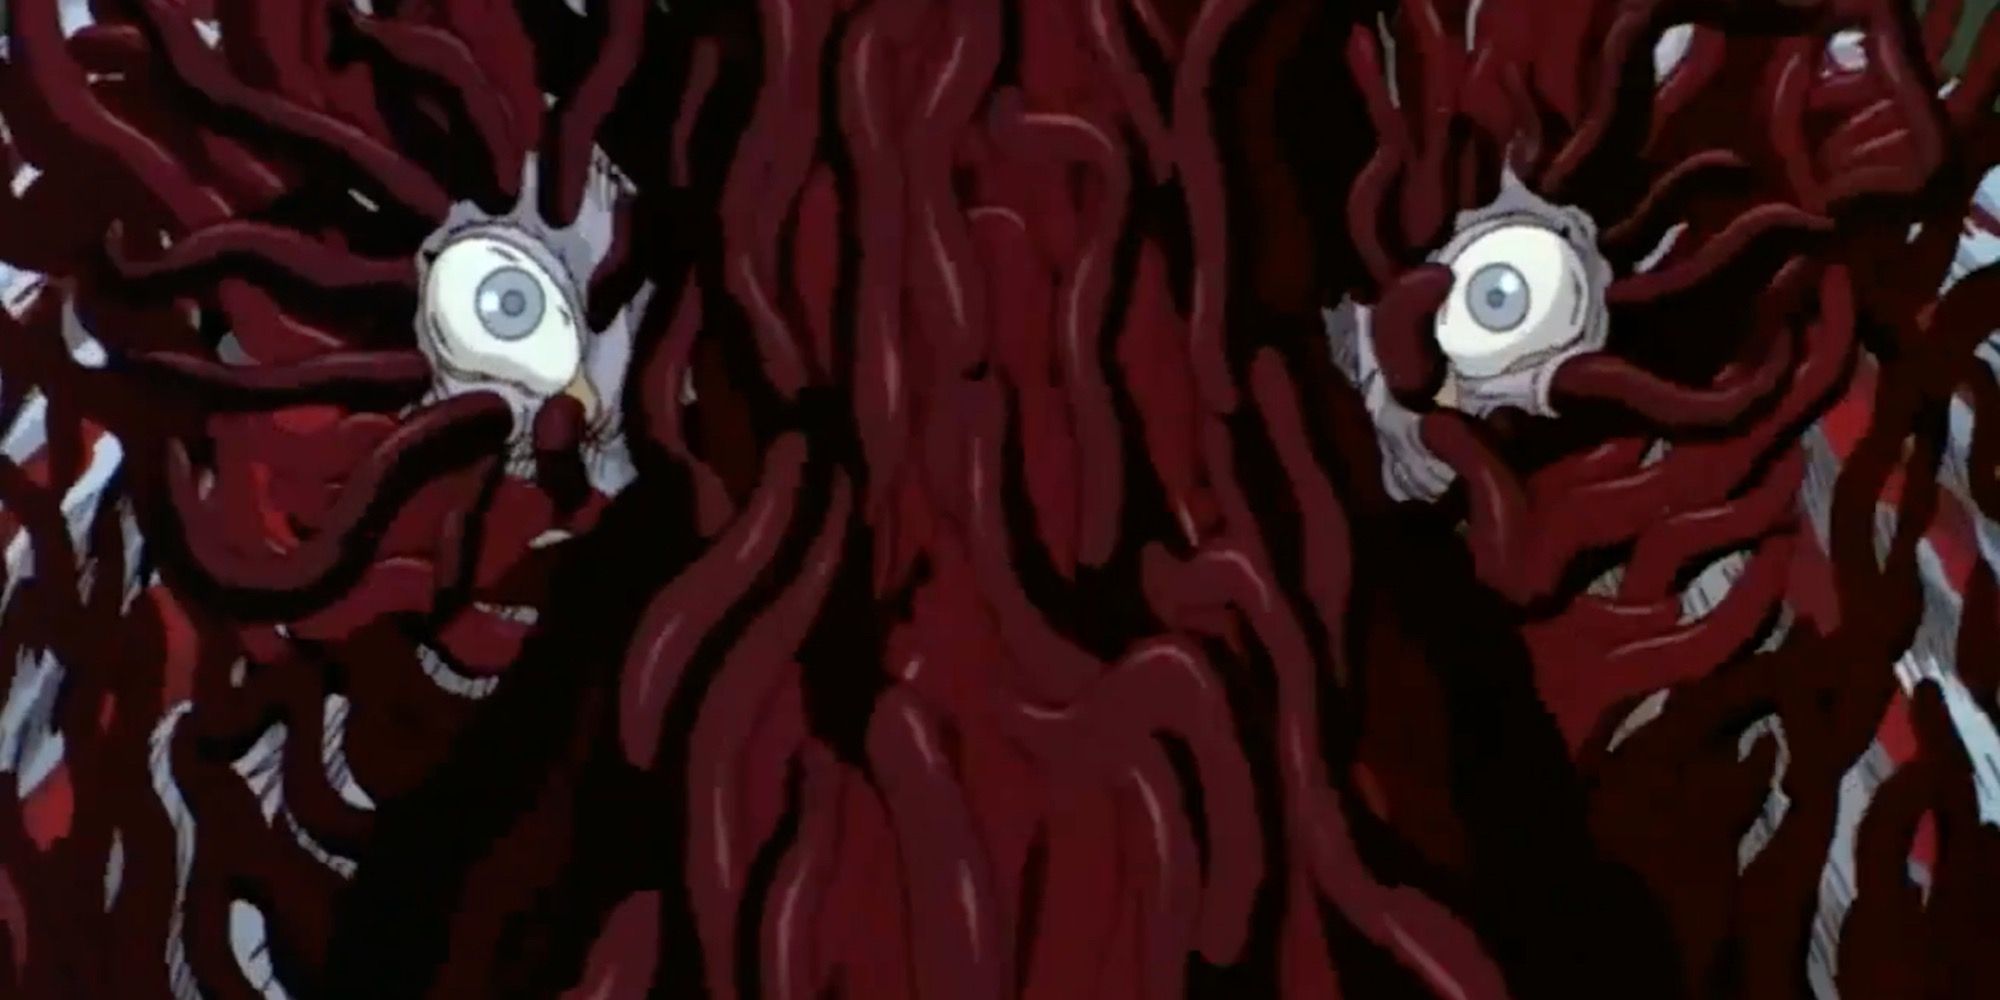 Okkoto covered in tentacles in Princess Mononoke